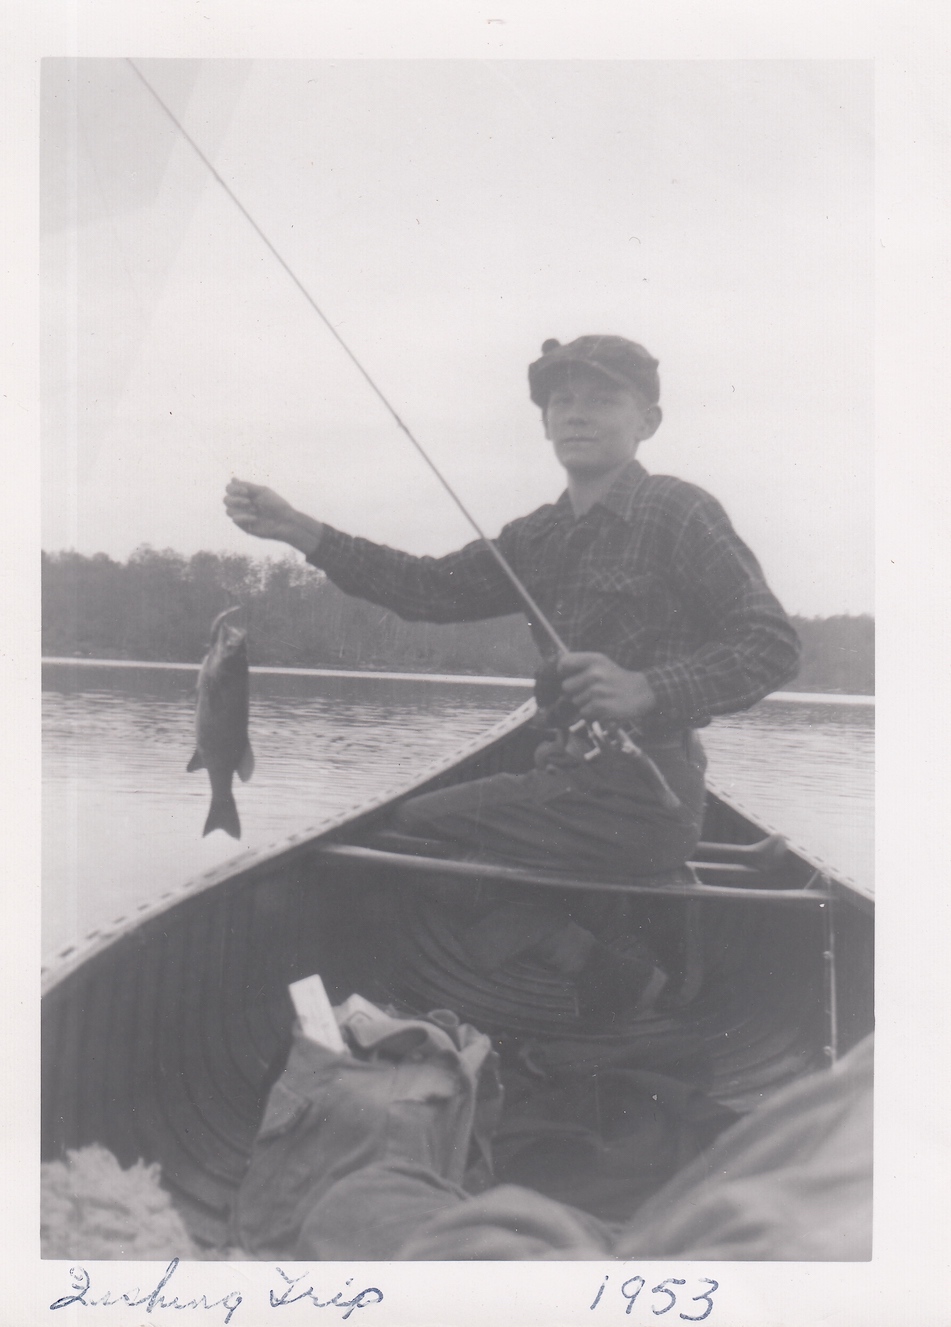 1953 fishing